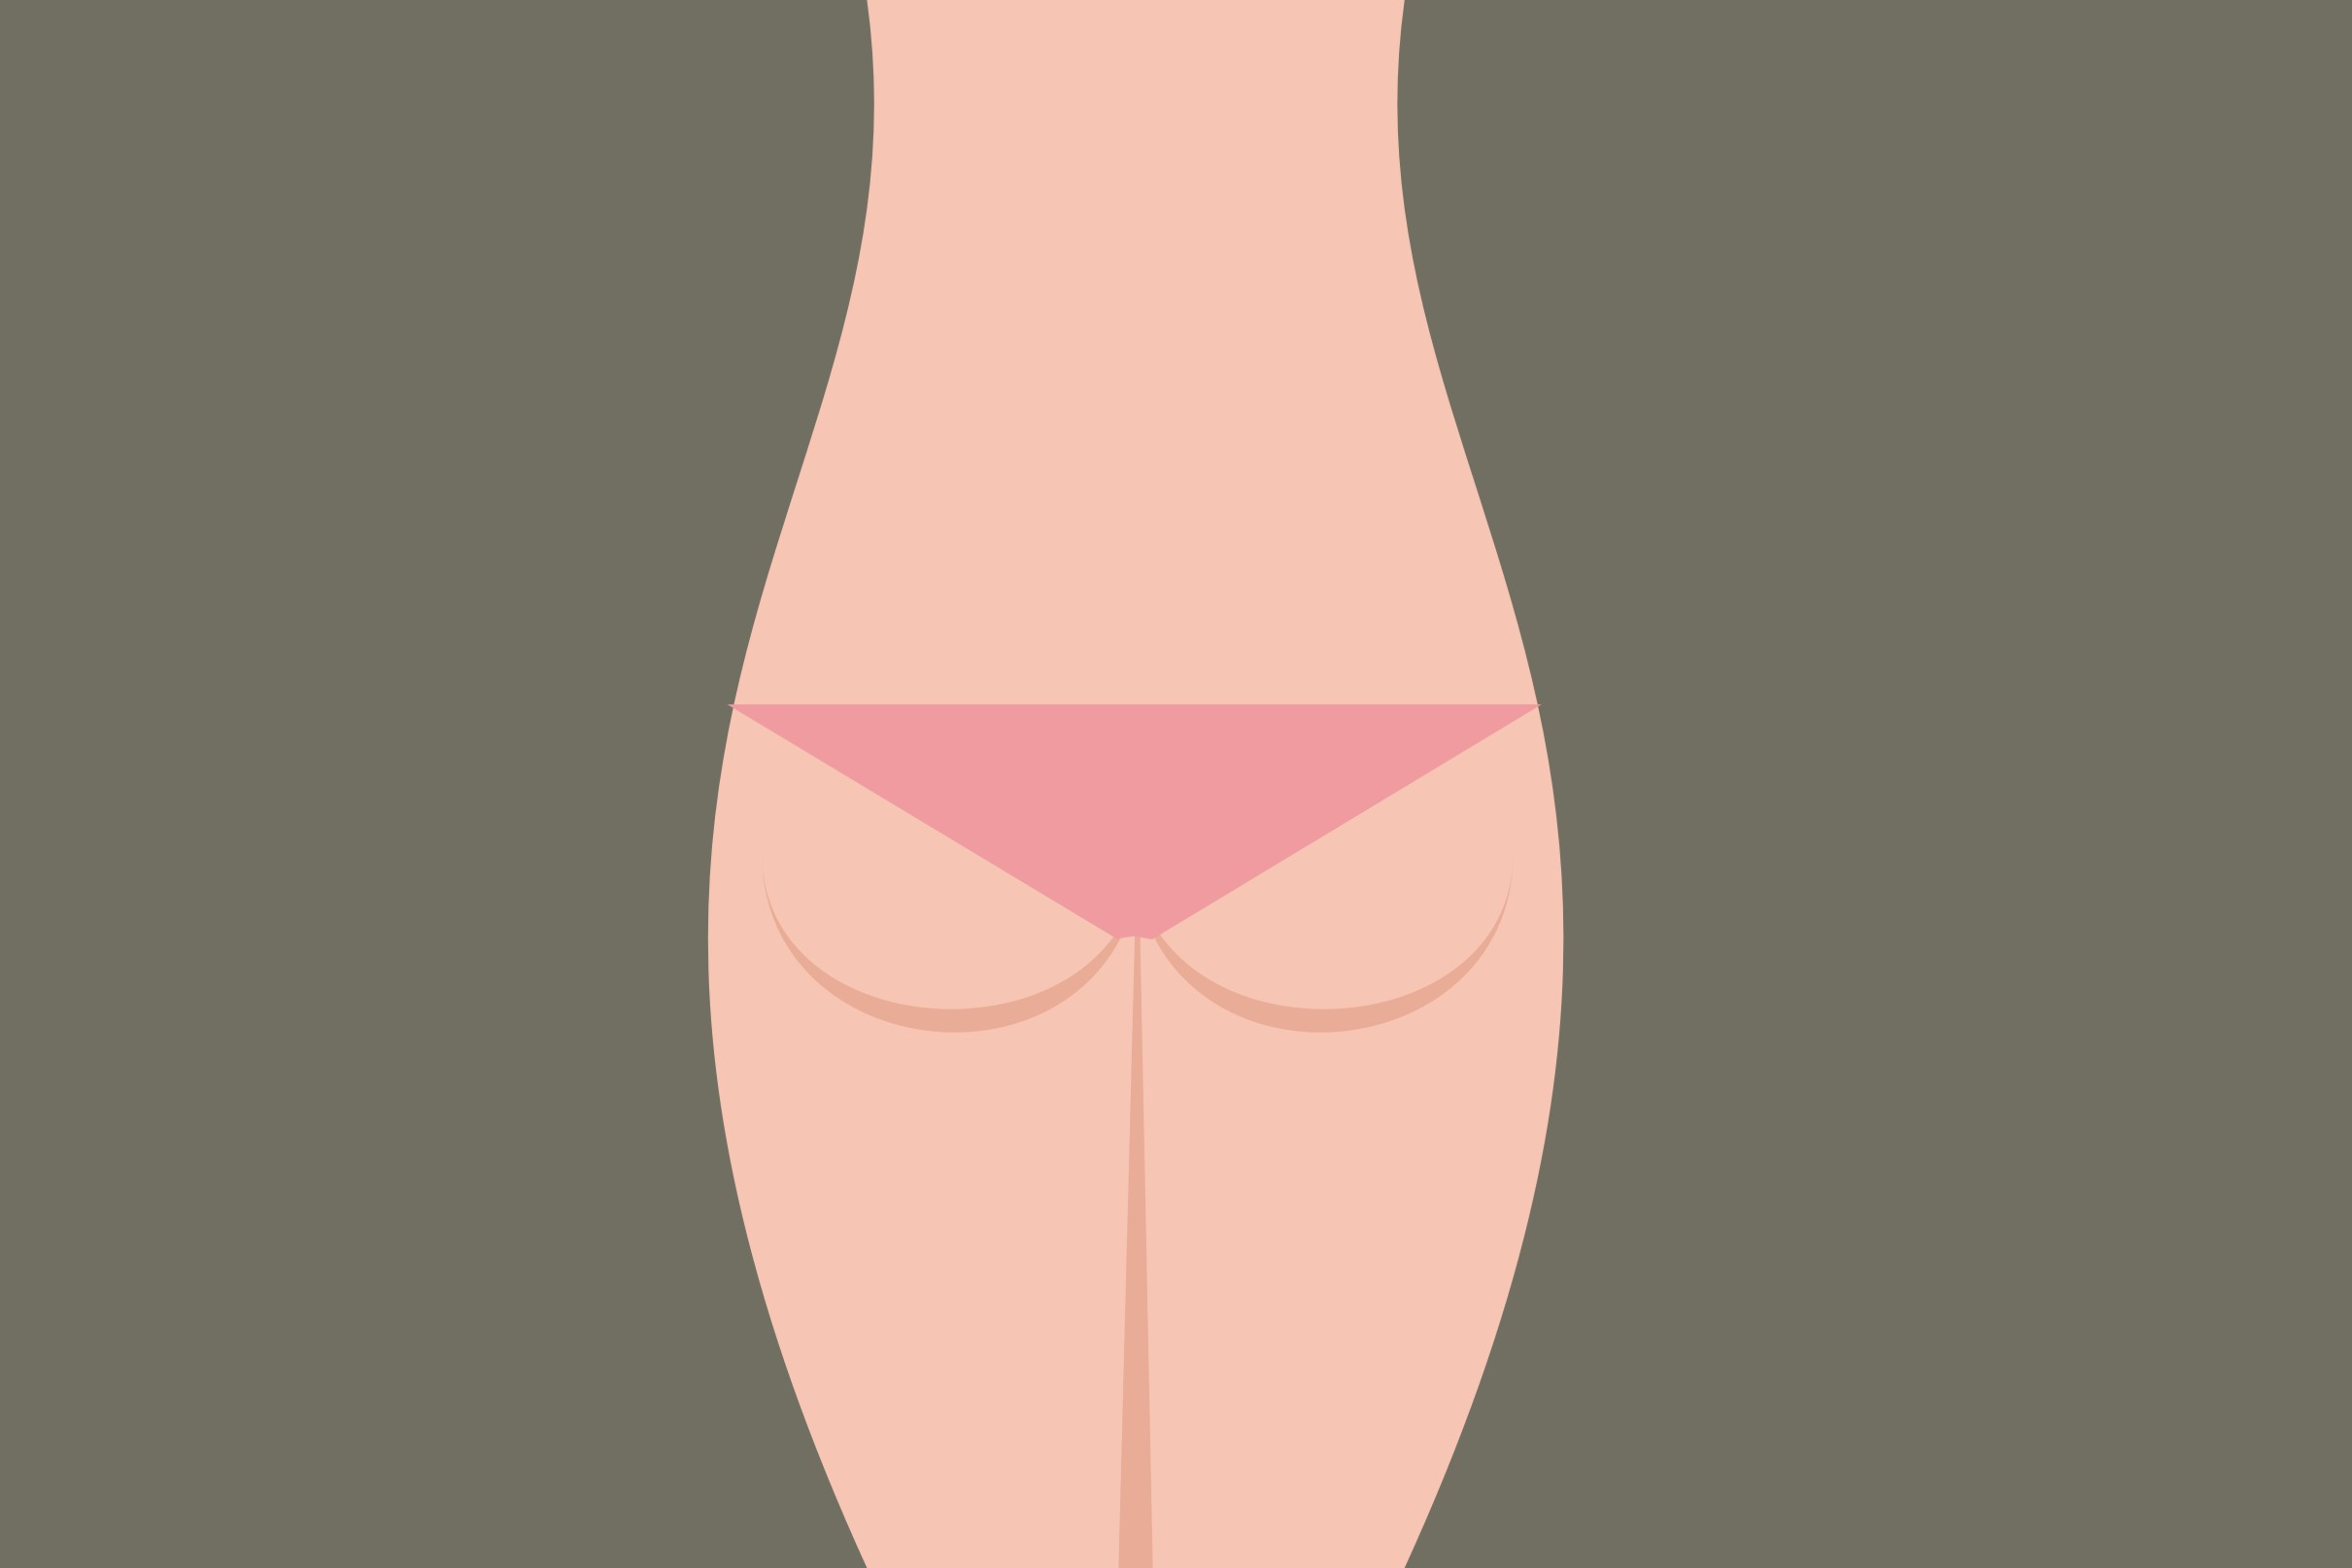 Bentuk pantat bisa mendeteksi gangguan kesehatan, apa saja ya?